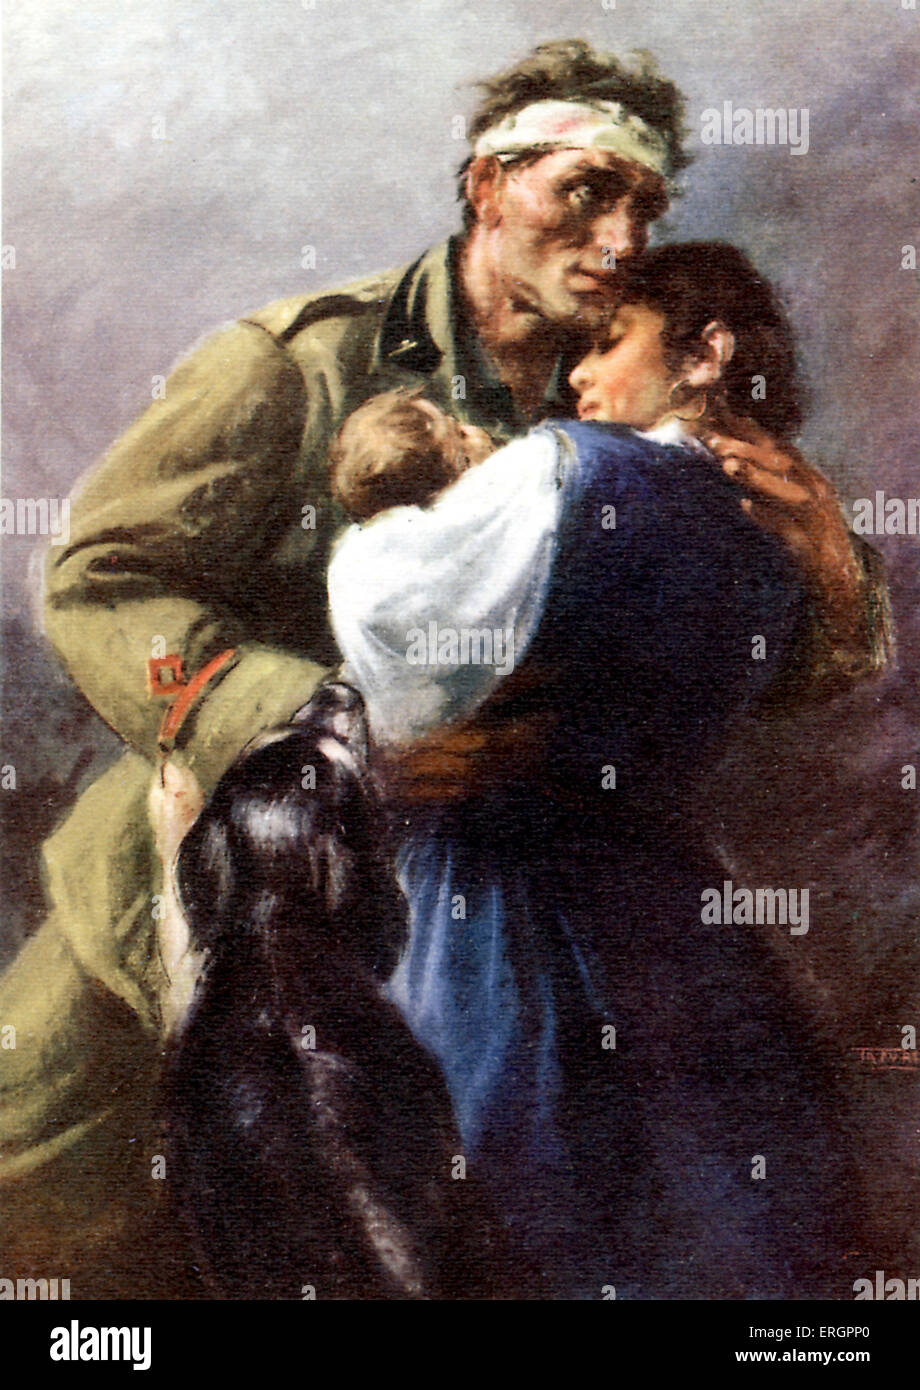 Italienische Propaganda Postkarte. Bandagierte Soldat umarmt seine Frau, Kind und Hund. Bildunterschrift lautet: "die Italiener haben Stockfoto